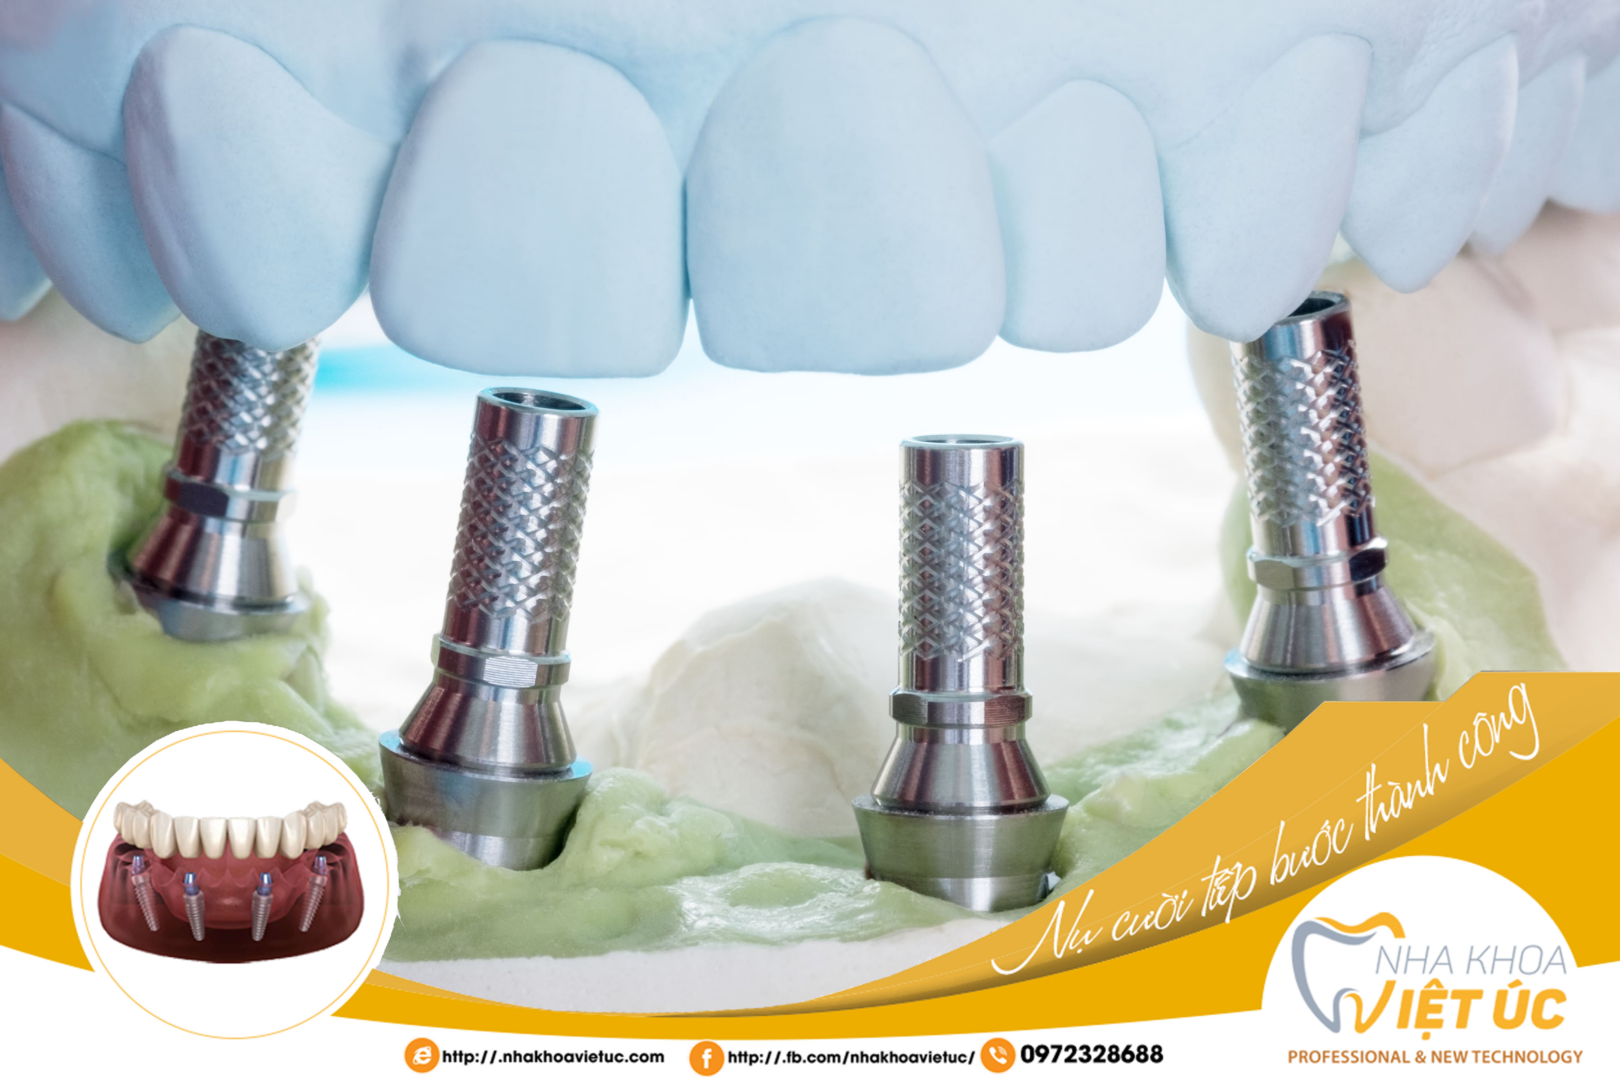 Trồng răng Implant toàn hàm All-on-4 giúp mọi người lấy lại răng đã mất chỉ với 4 trụ titanium đặt vào xương hàm